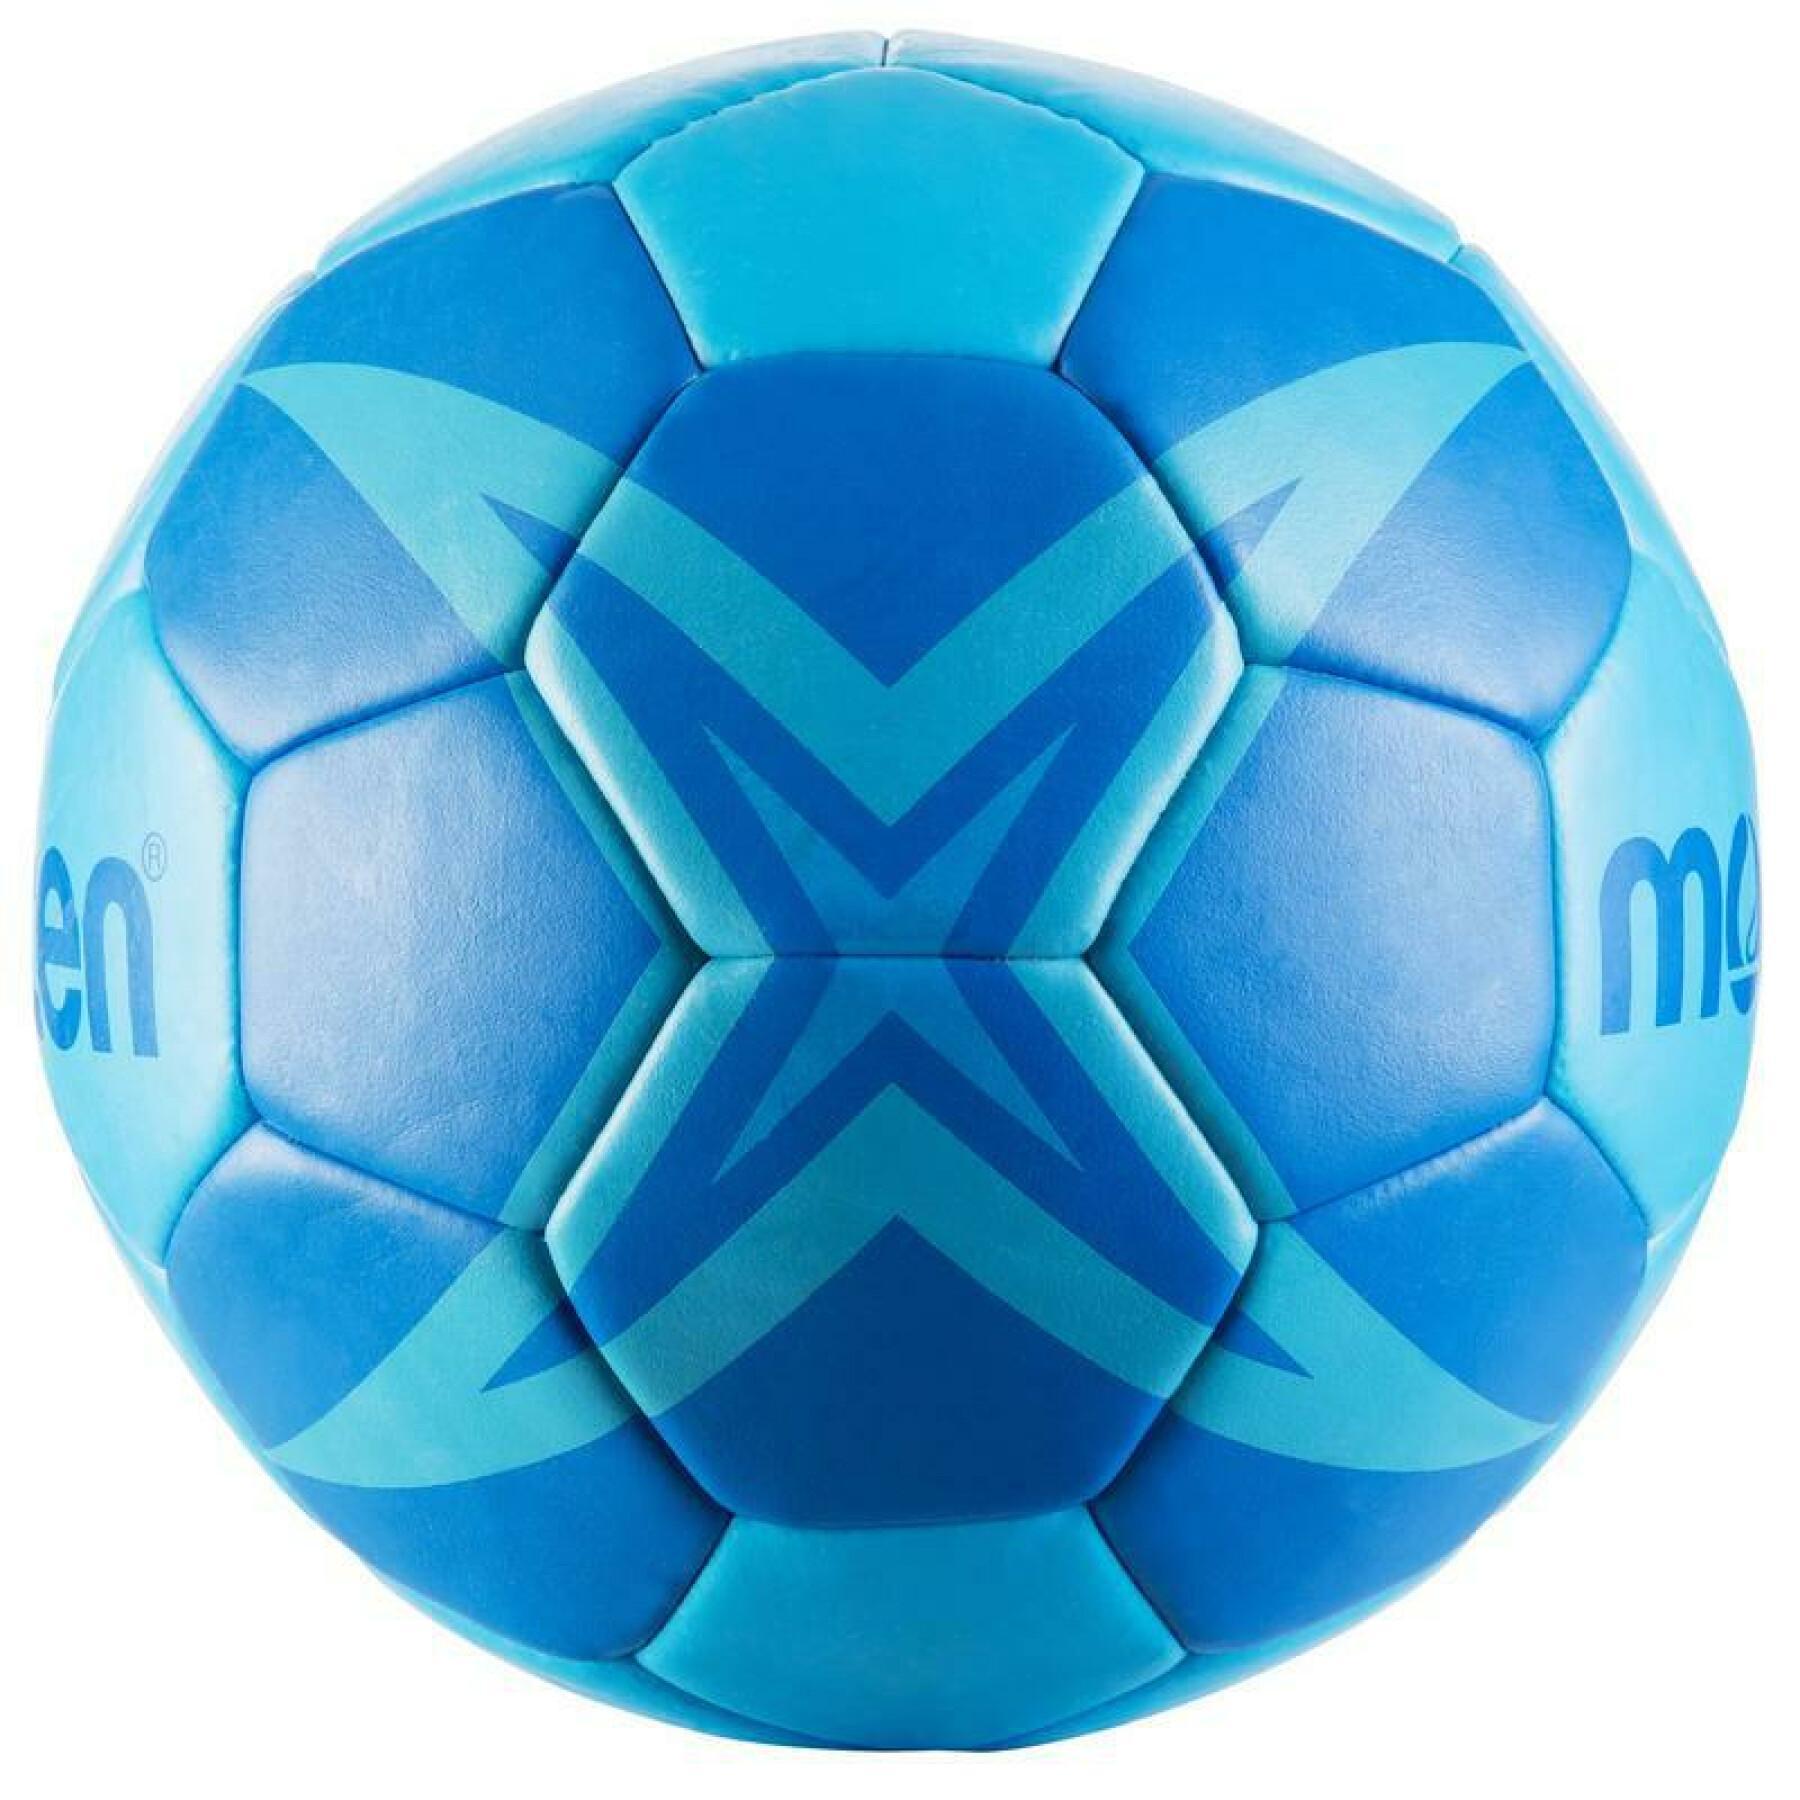 Balon Molten d'entrainement HXT1800 taille 3